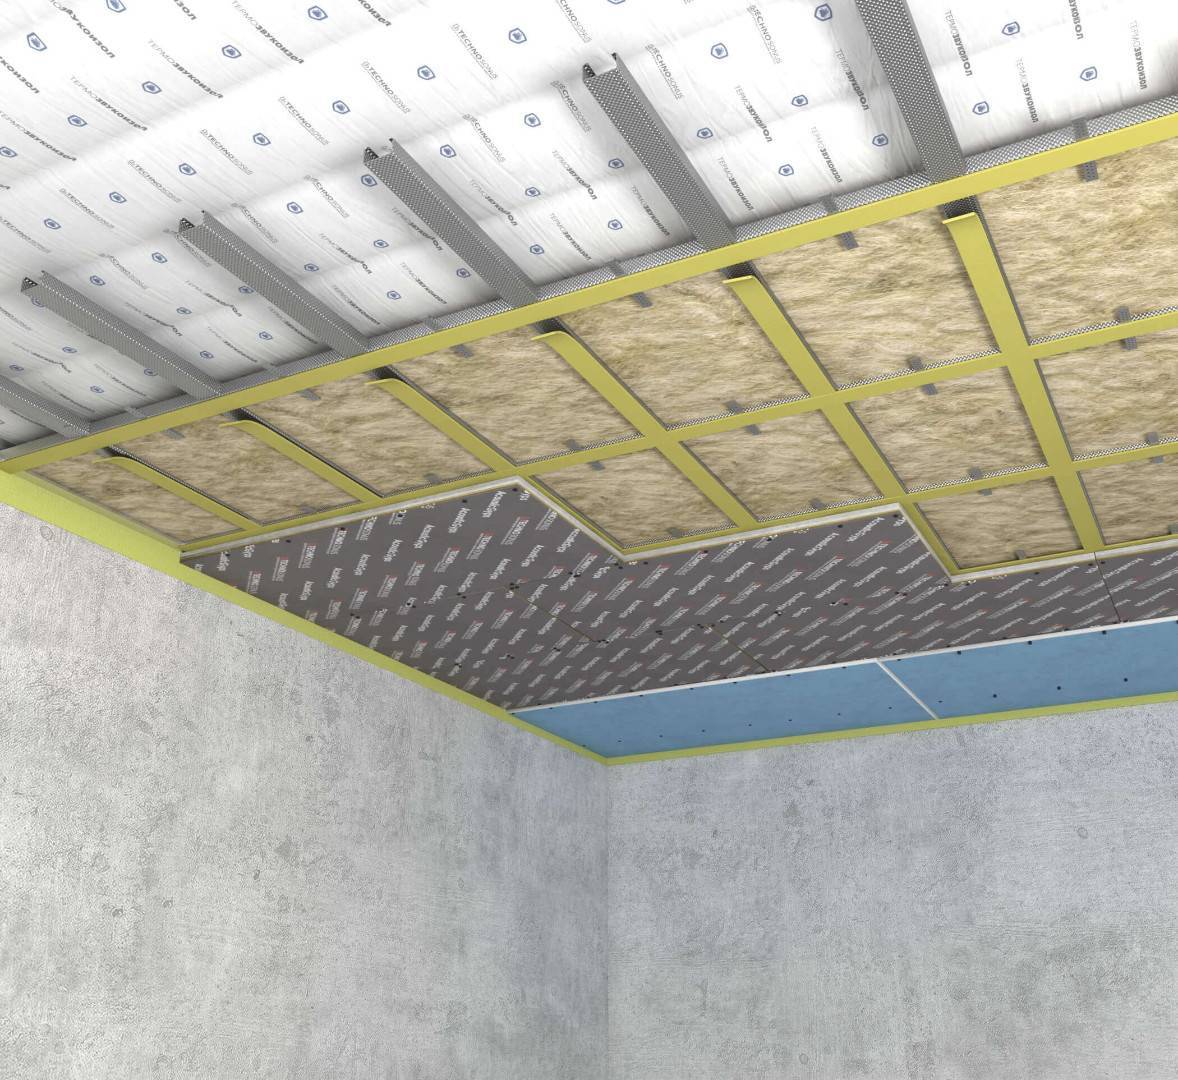 Шумоизоляция потолка в квартире. 16 материалов от ударного шума